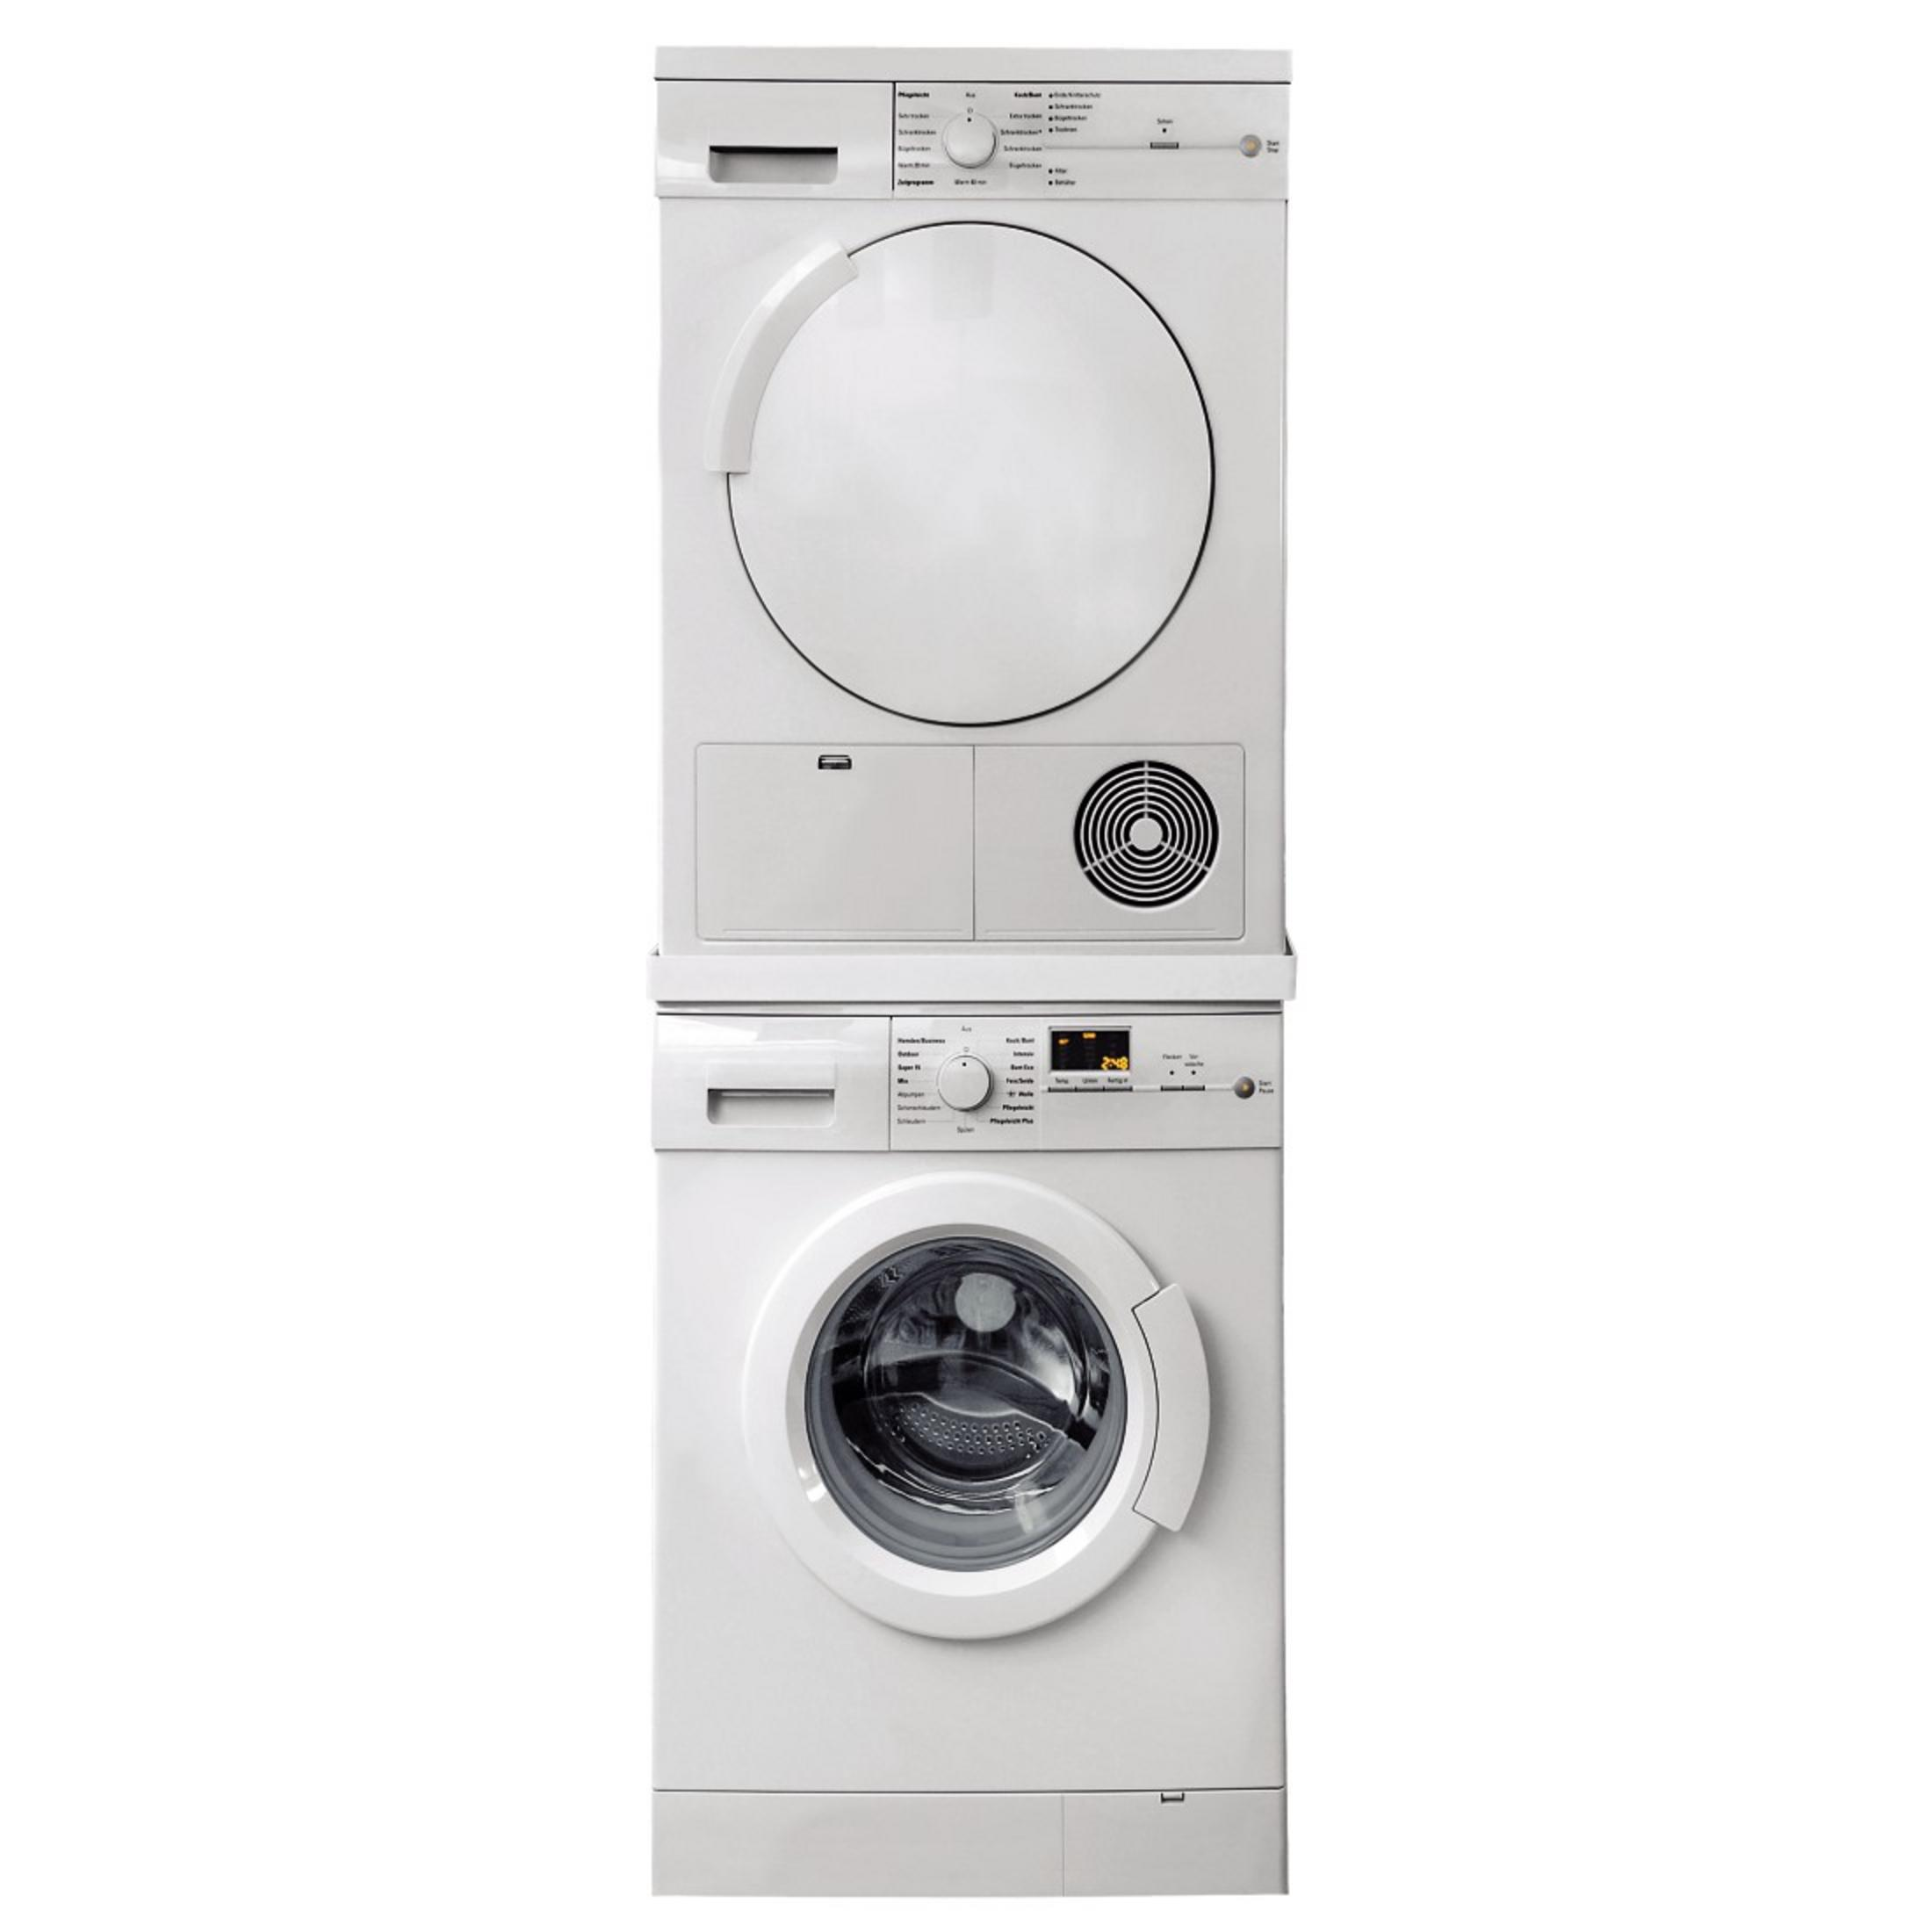 XAVAX 110815 ZWISCHENBAUSATZ :1/SCH für (600 Zwischenbausatz mm) Waschmaschine/Trockner